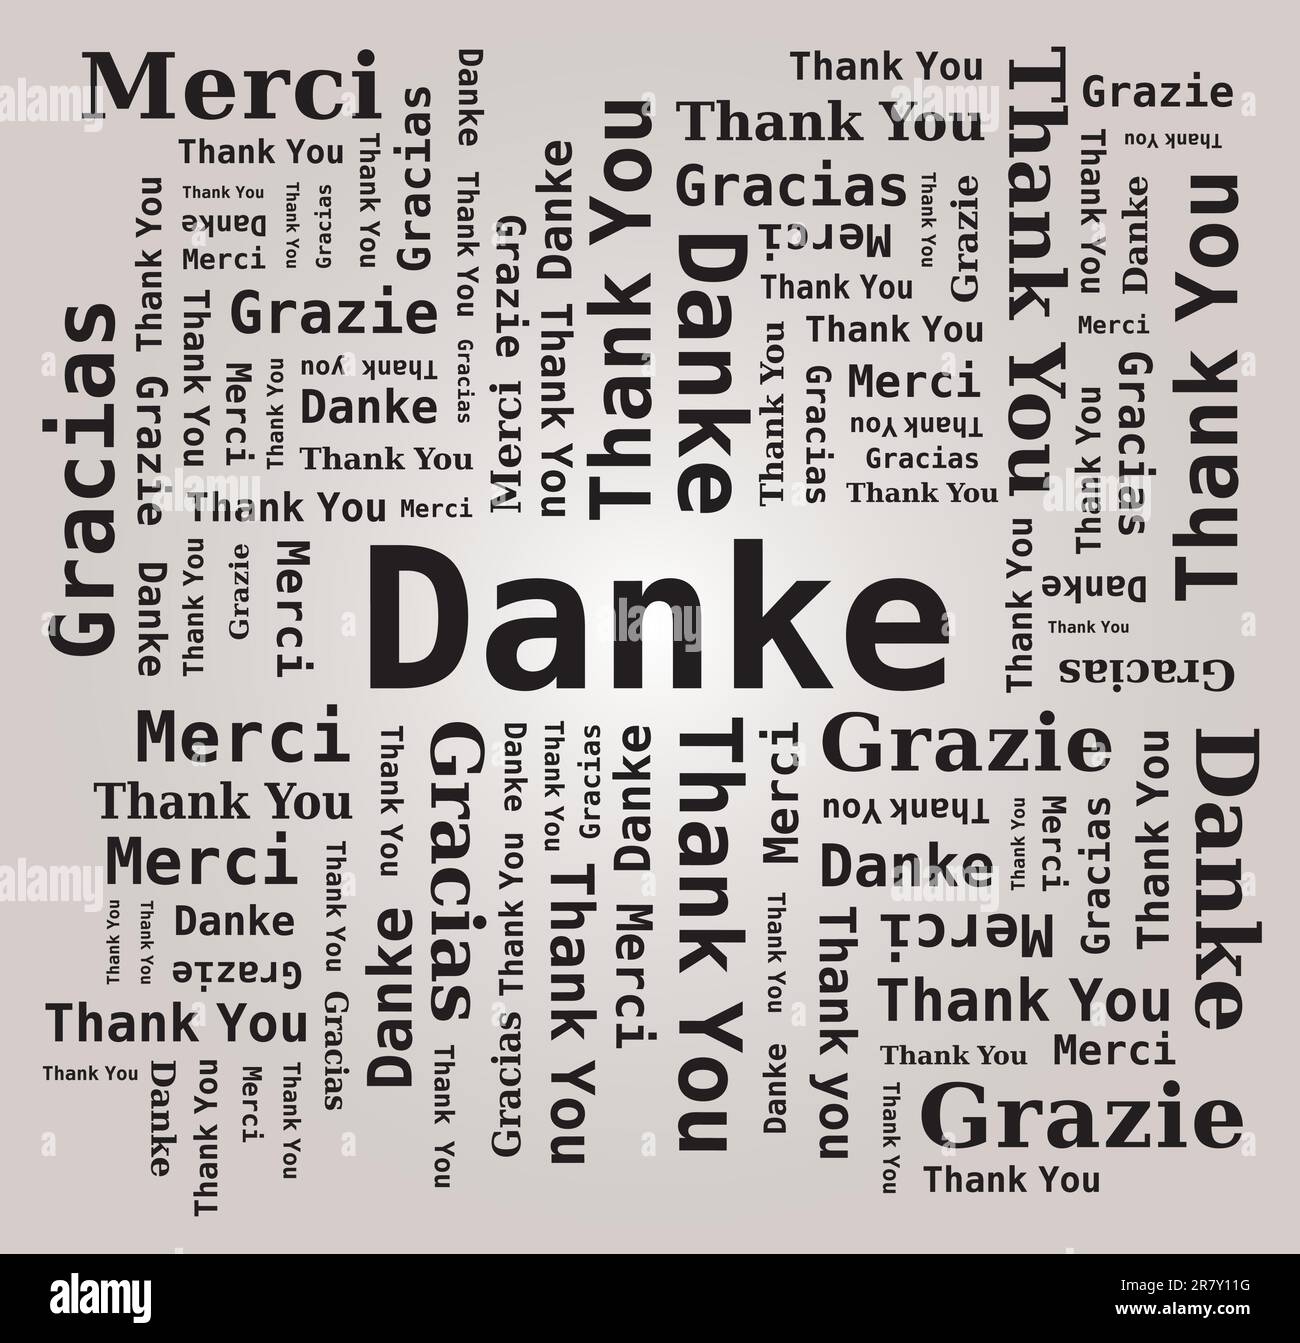 Merci Word Cloud dans différentes langues - 5 langues, anglais, français, allemand, espagnol et italien Illustration de Vecteur